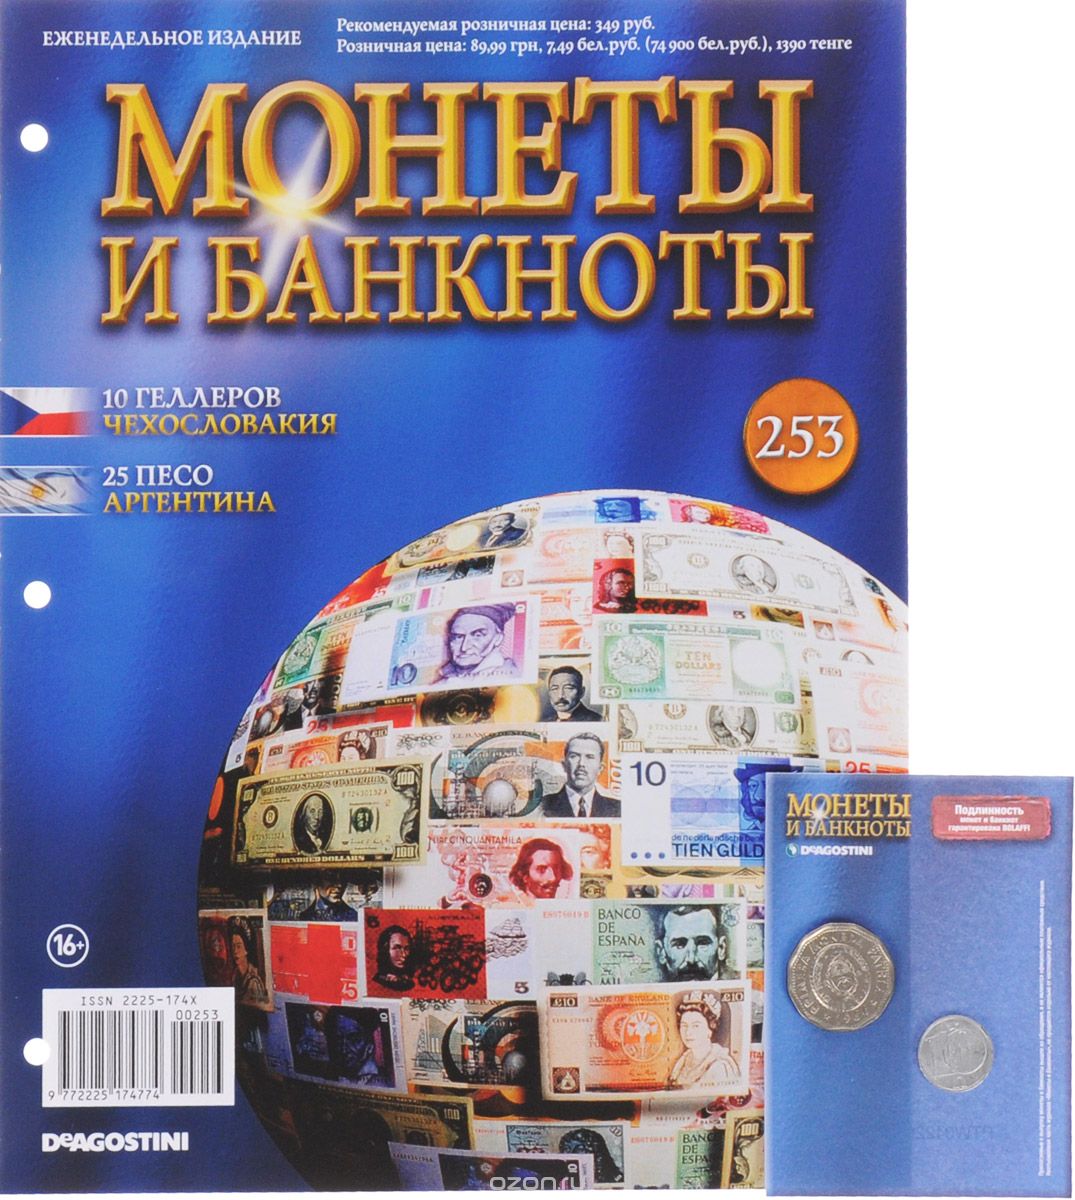 Скачать книгу "Журнал "Монеты и банкноты" №253"